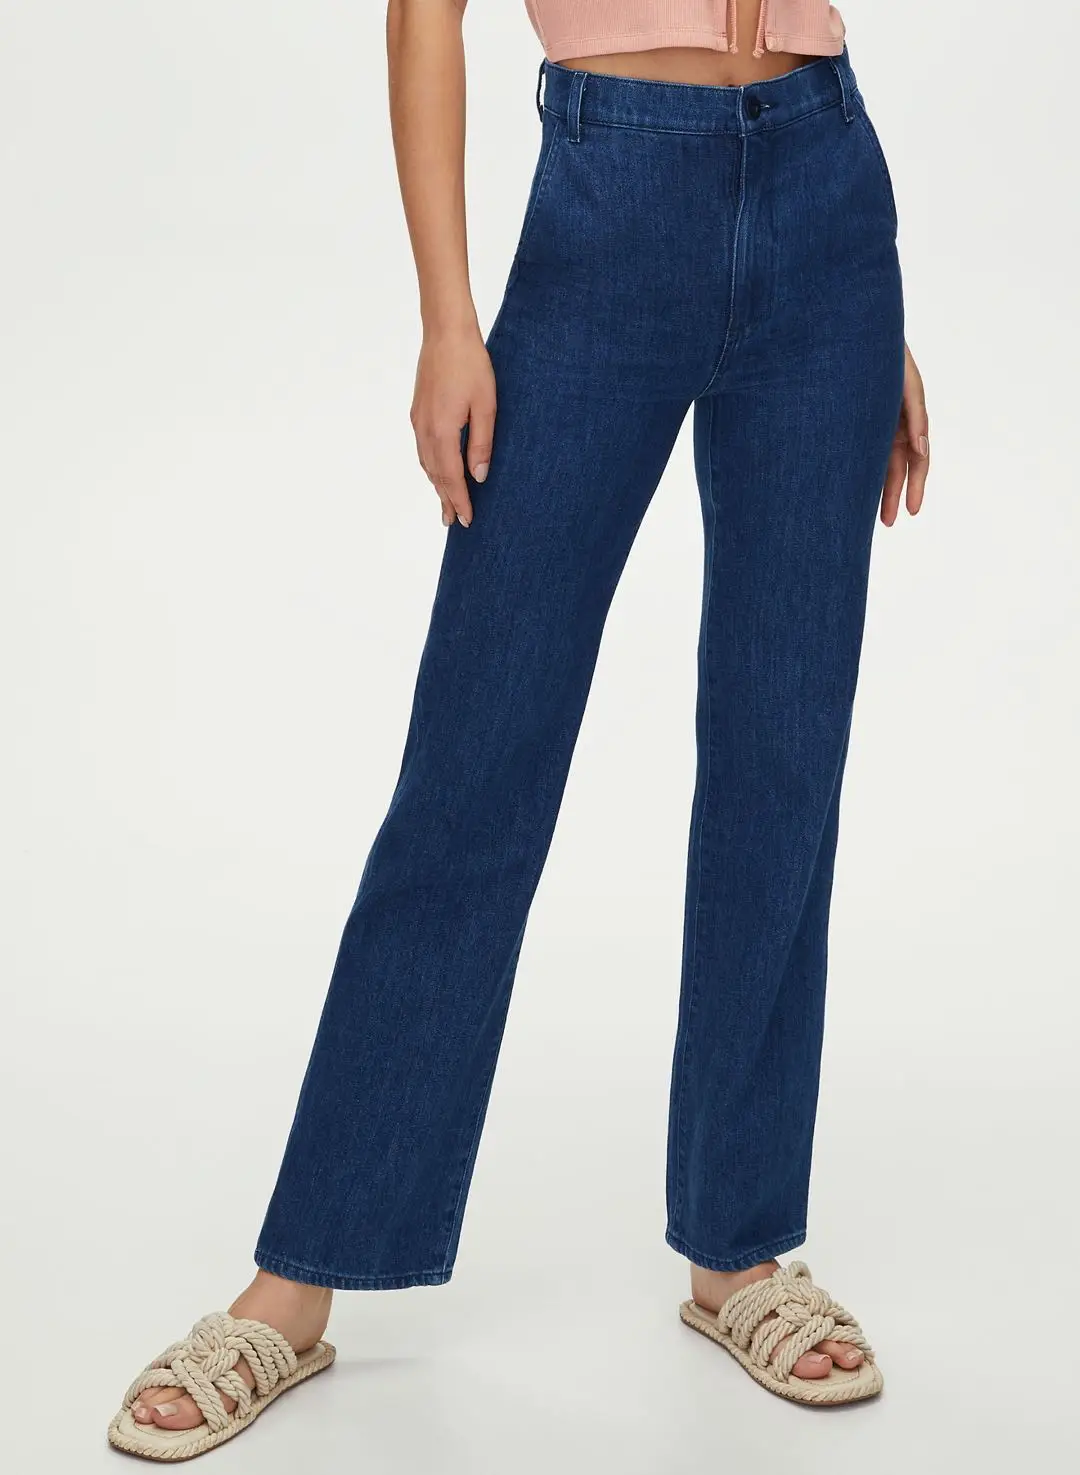 Super Soft Denim Fabric High Waist Denim Straight Leg Pants Women Trouser Jeans